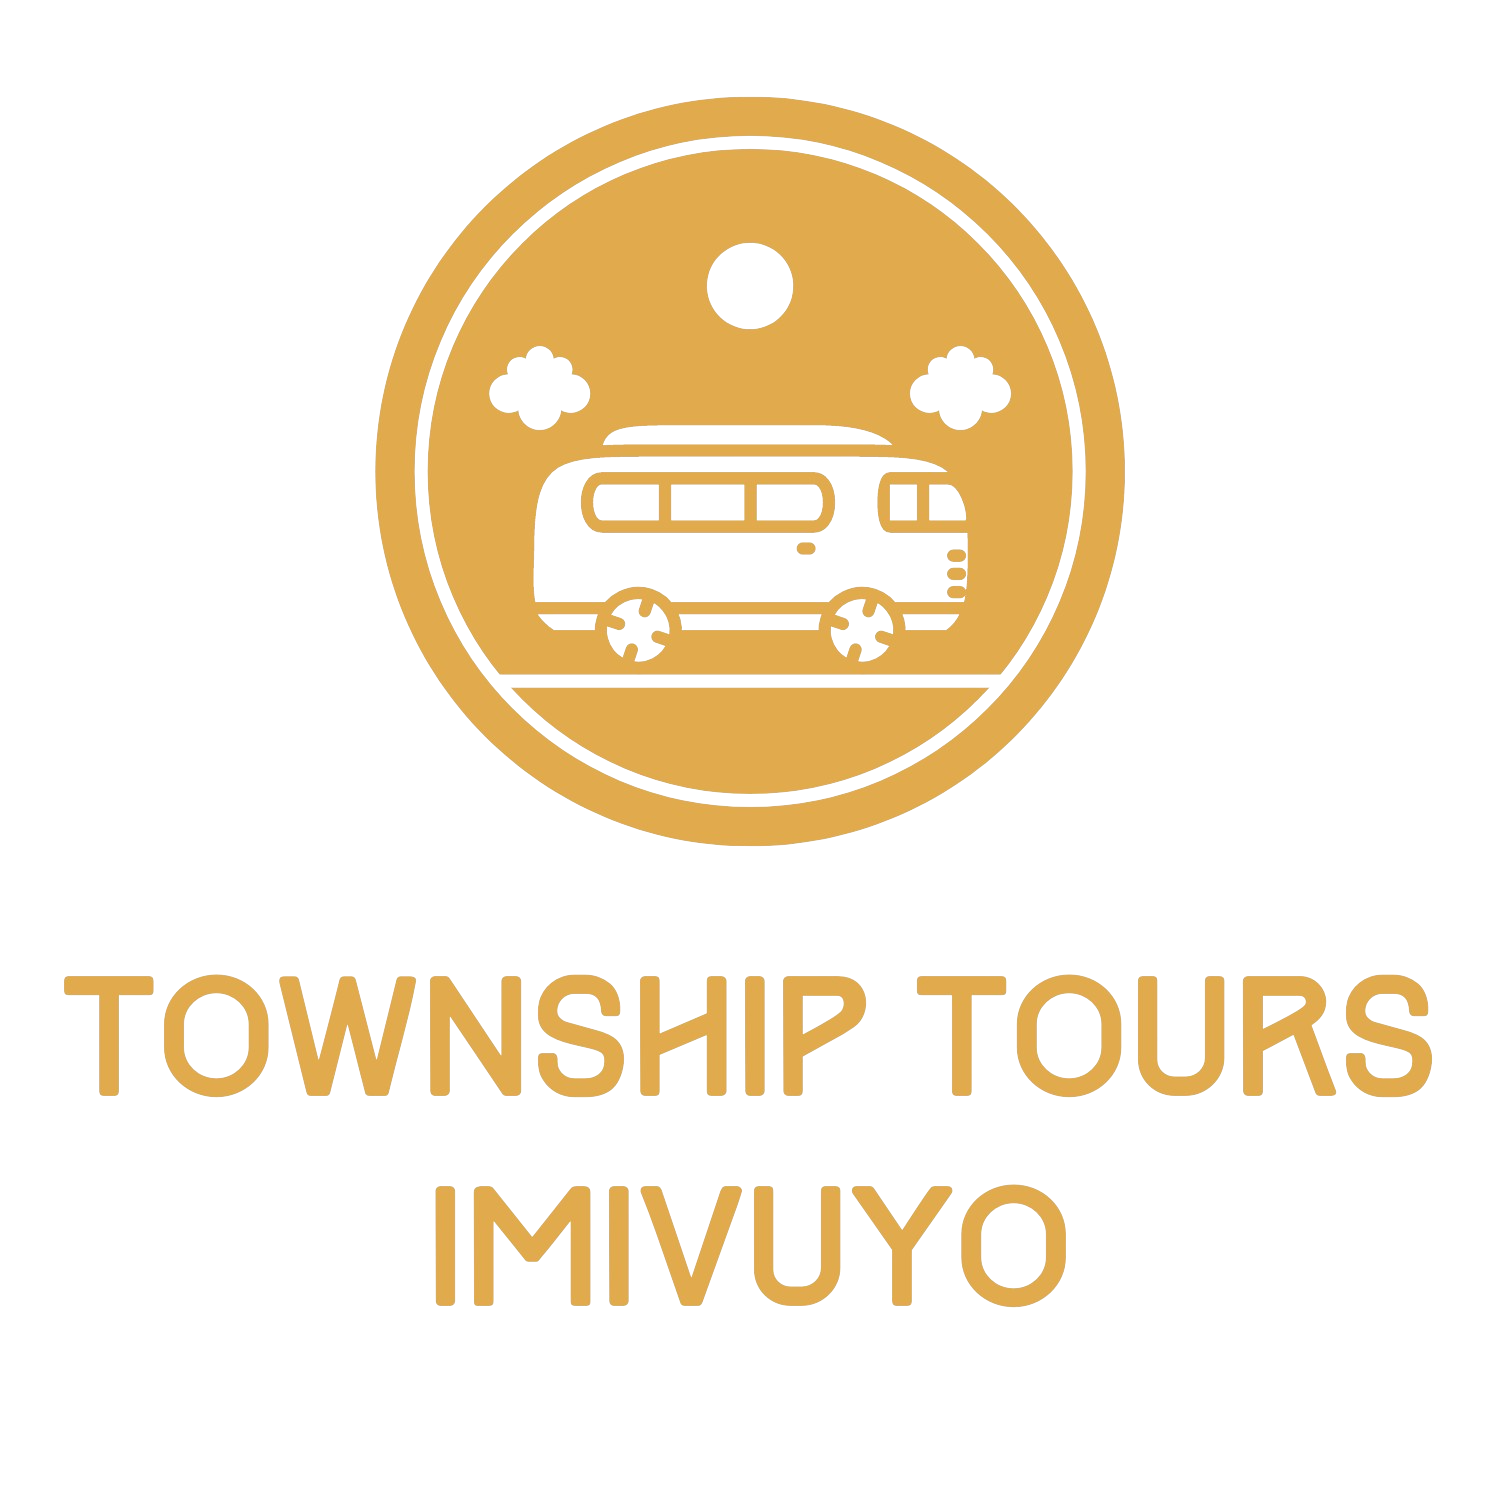 Township Tours Imivuyo